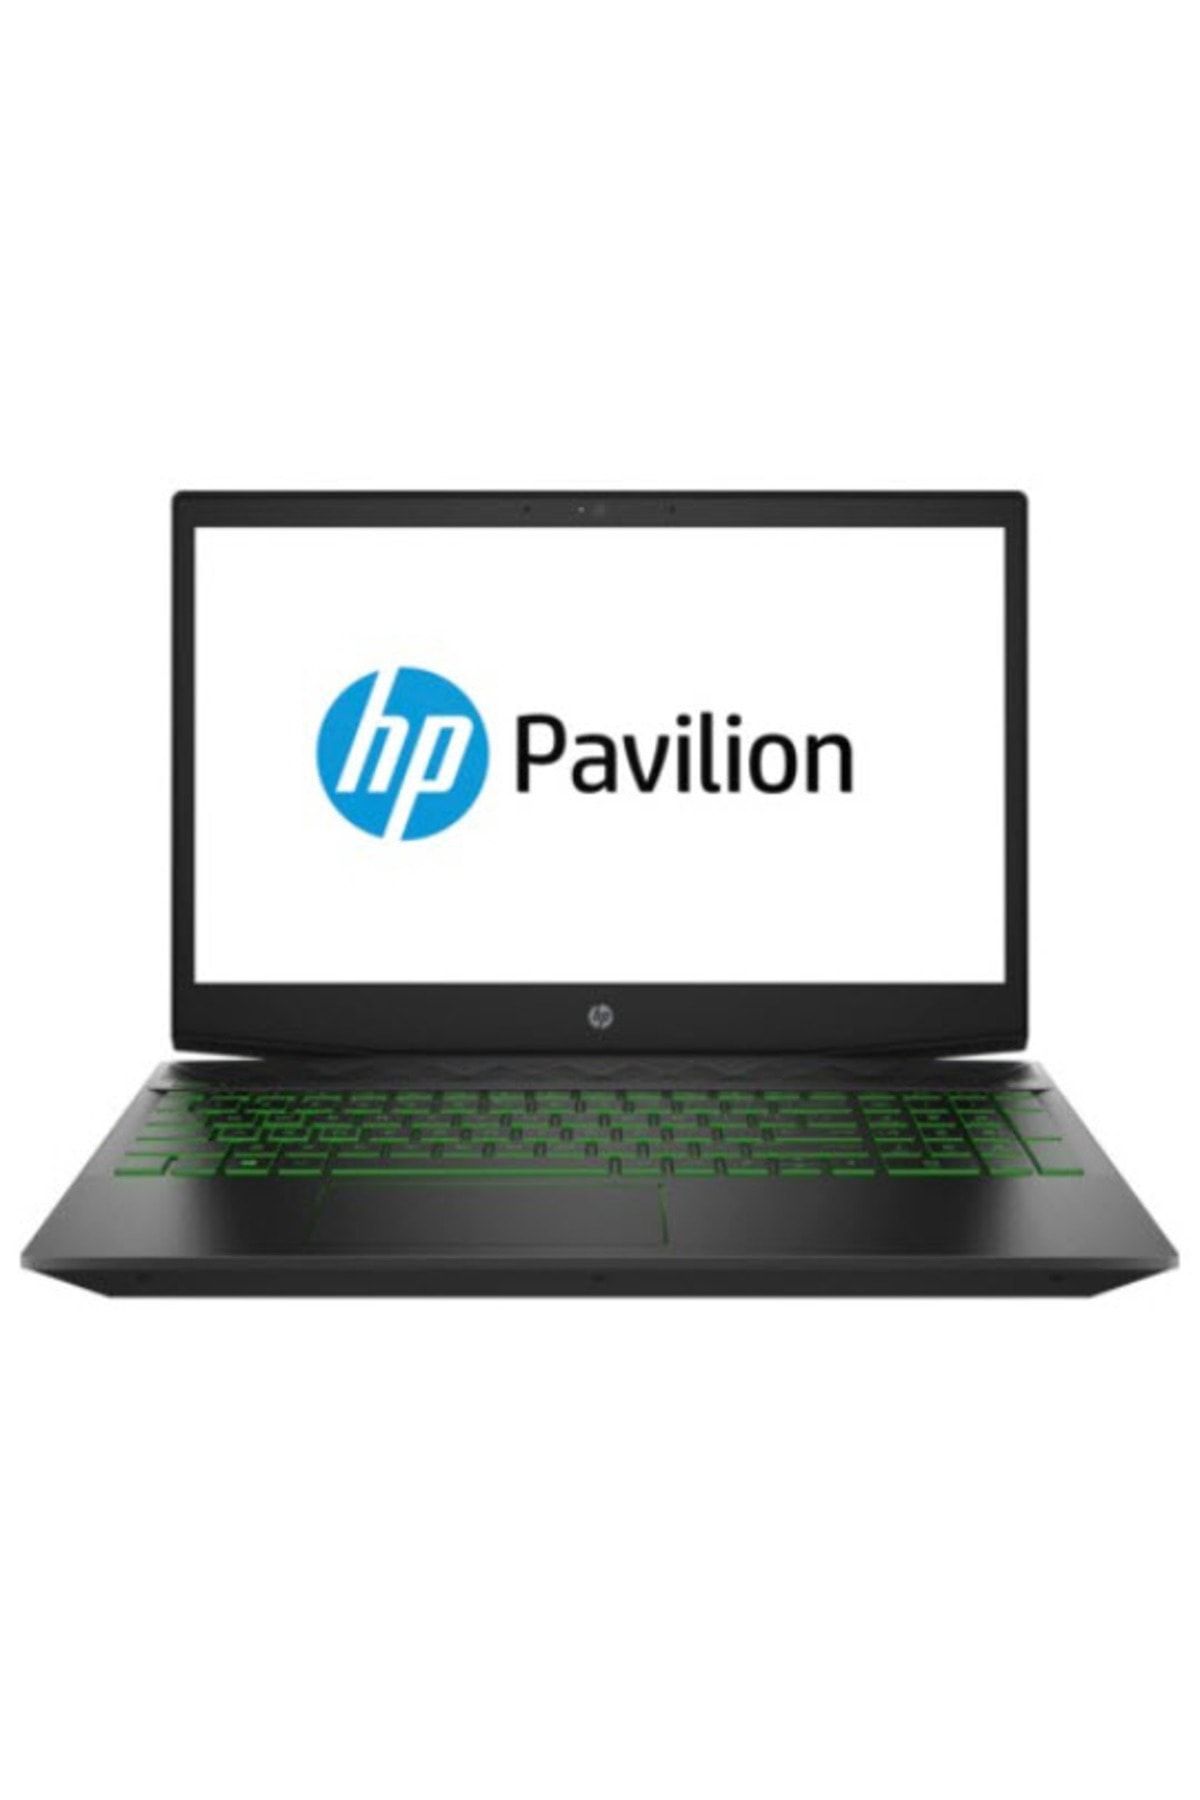 HP Pavilion 15-CX0038NT Intel Core i5 8300H 8GB 256GB SSD GTX1050 Freedos 15.6" FHD 8KY27EA